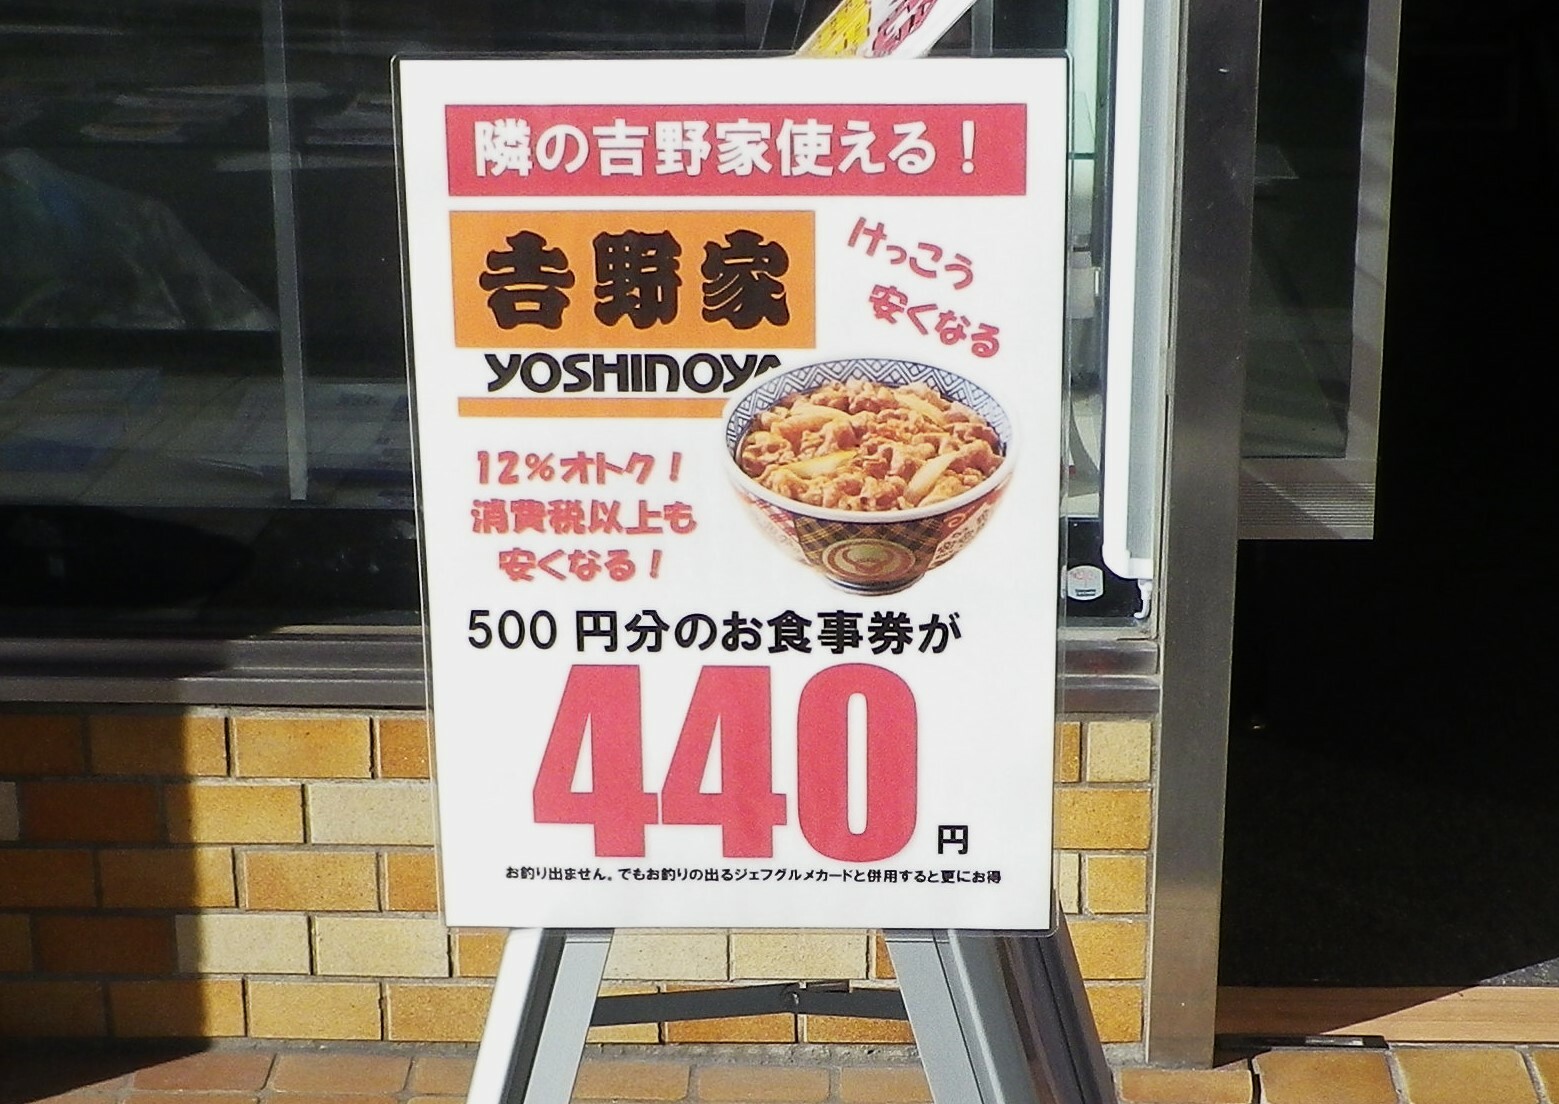 「500円のお食事券が440円で買える」ということ！